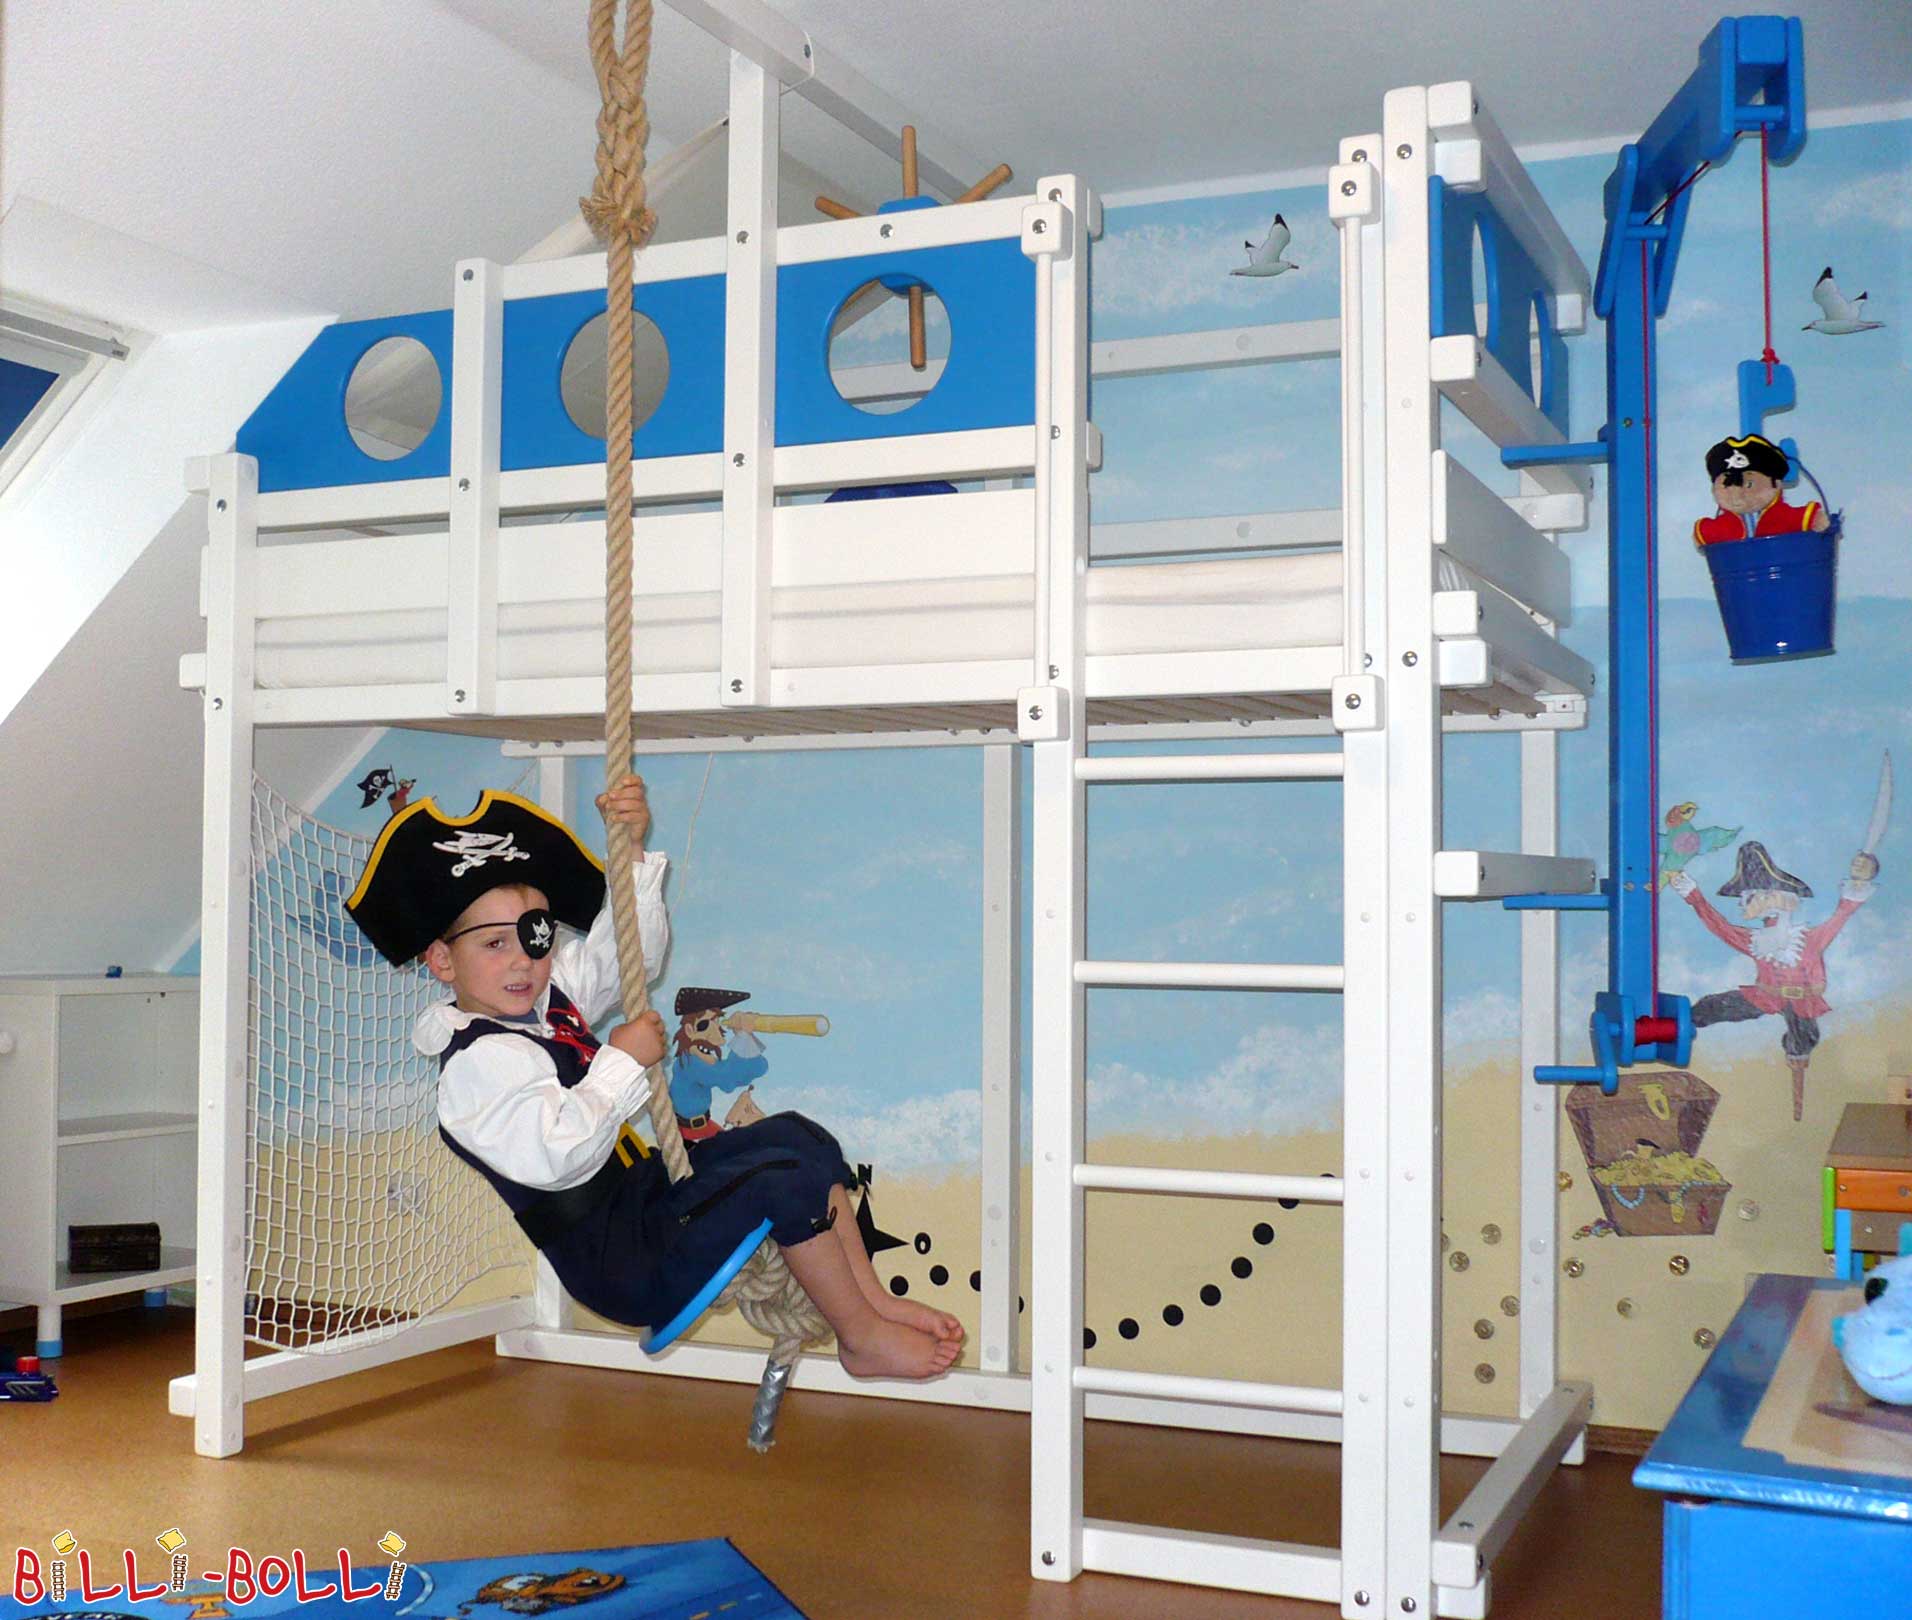 Piraten-Hochbett für kleine Seeräuber, hier blau und weiß lackiert (Hochbett mitwachsend)